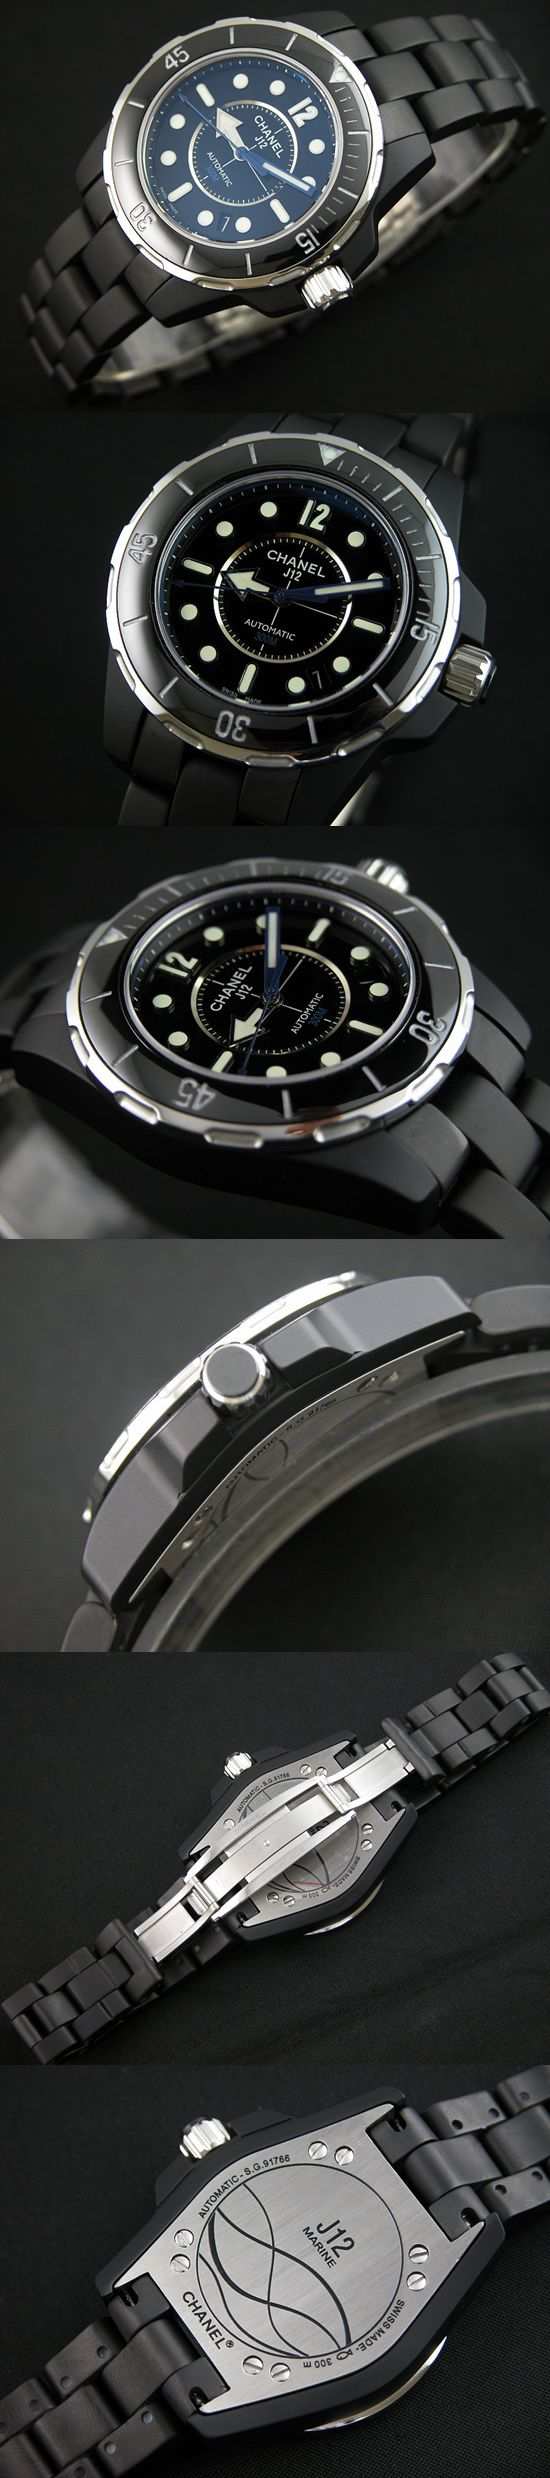 おしゃれなブランド時計がシャネル-CHANEL-H2558-bg-J12 マリン-男性用を提供します.